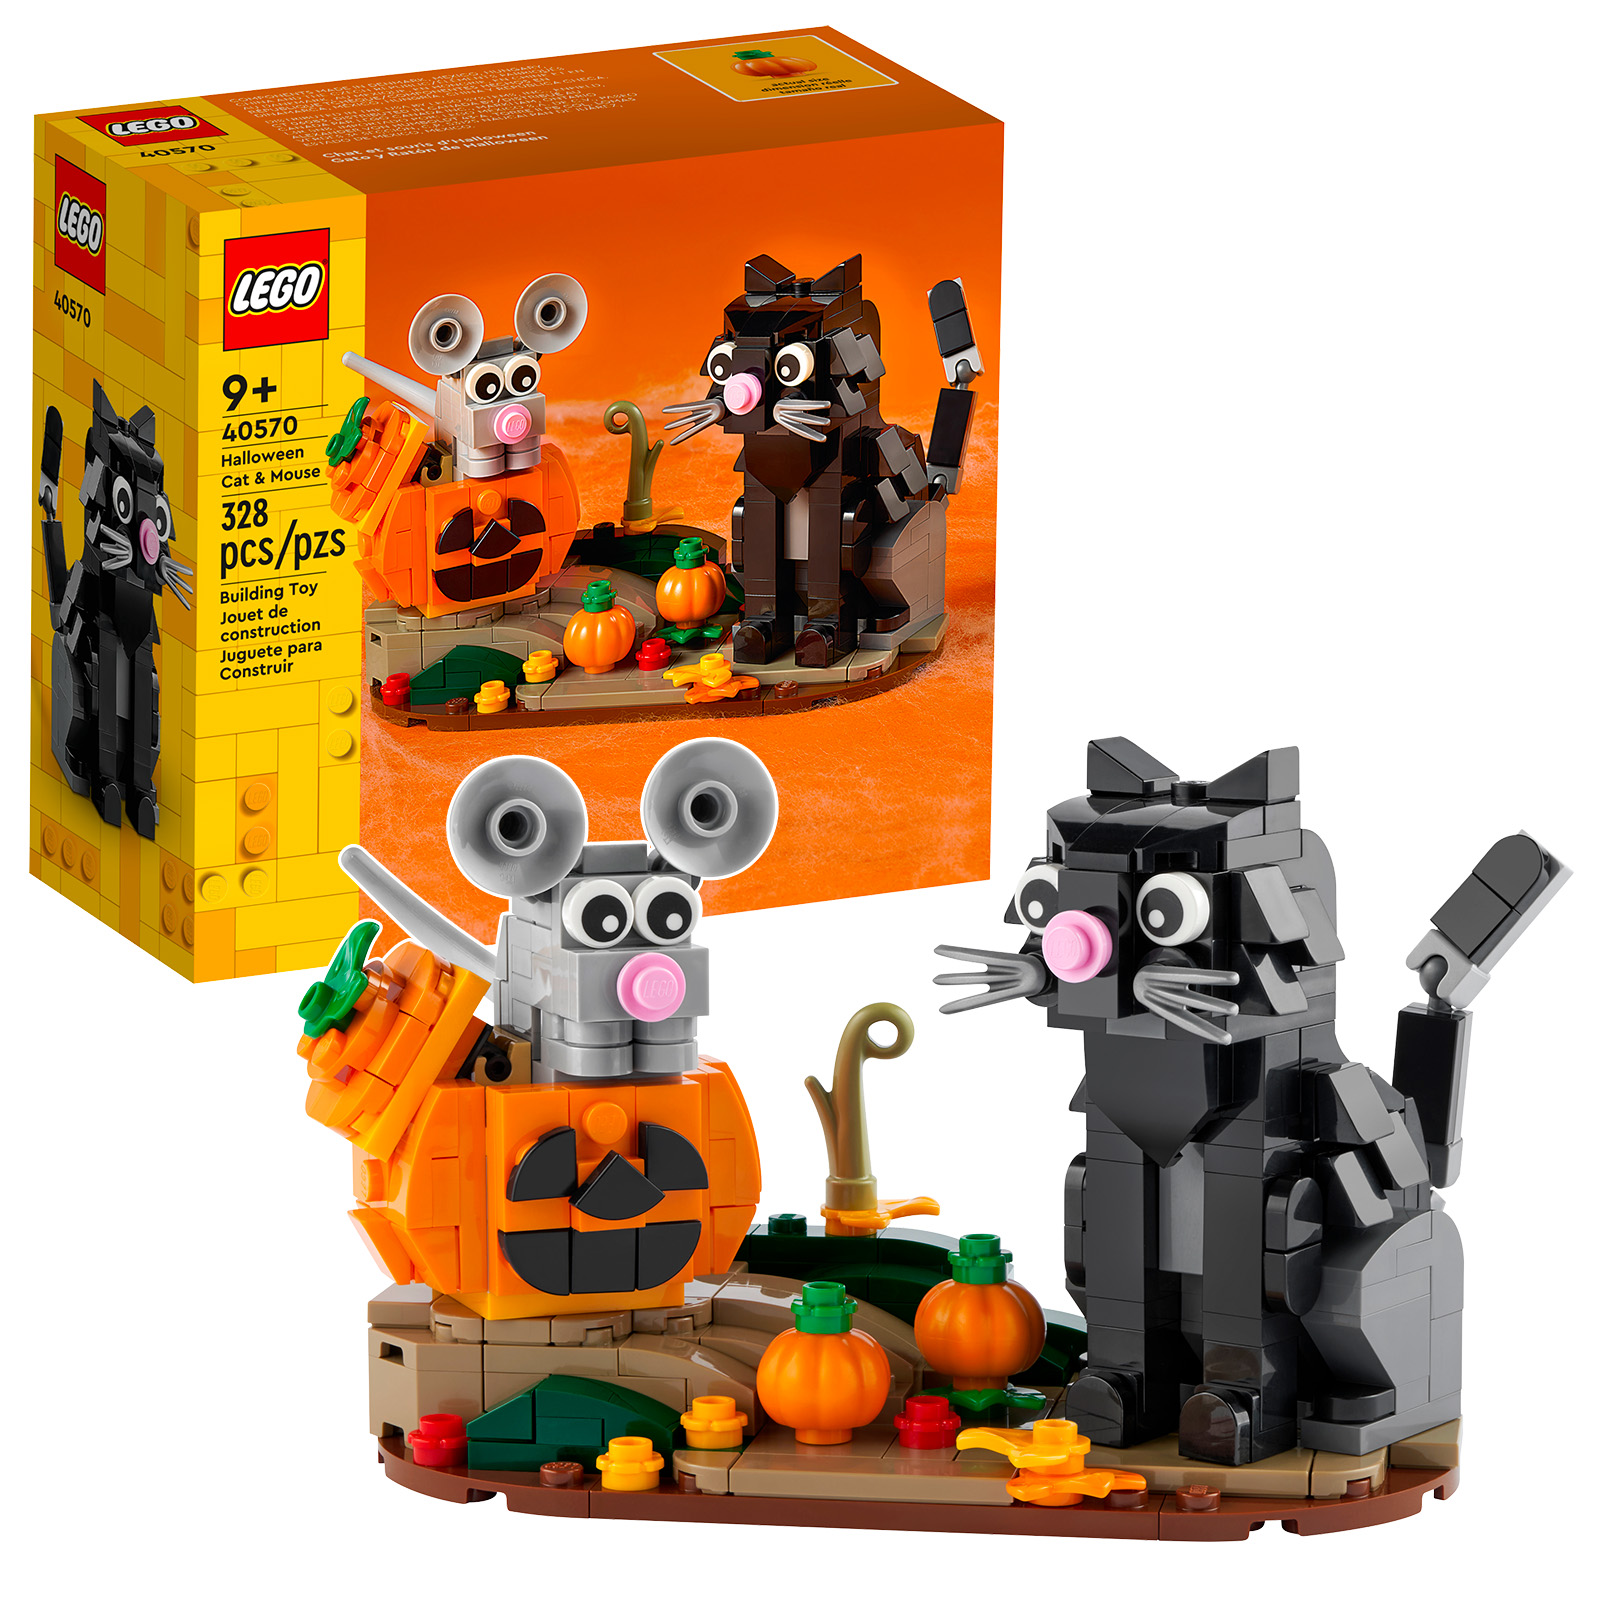 Hamarosan Halloween van: a 40570 Halloween Cat & Mouse készlet online elérhető a Shopban